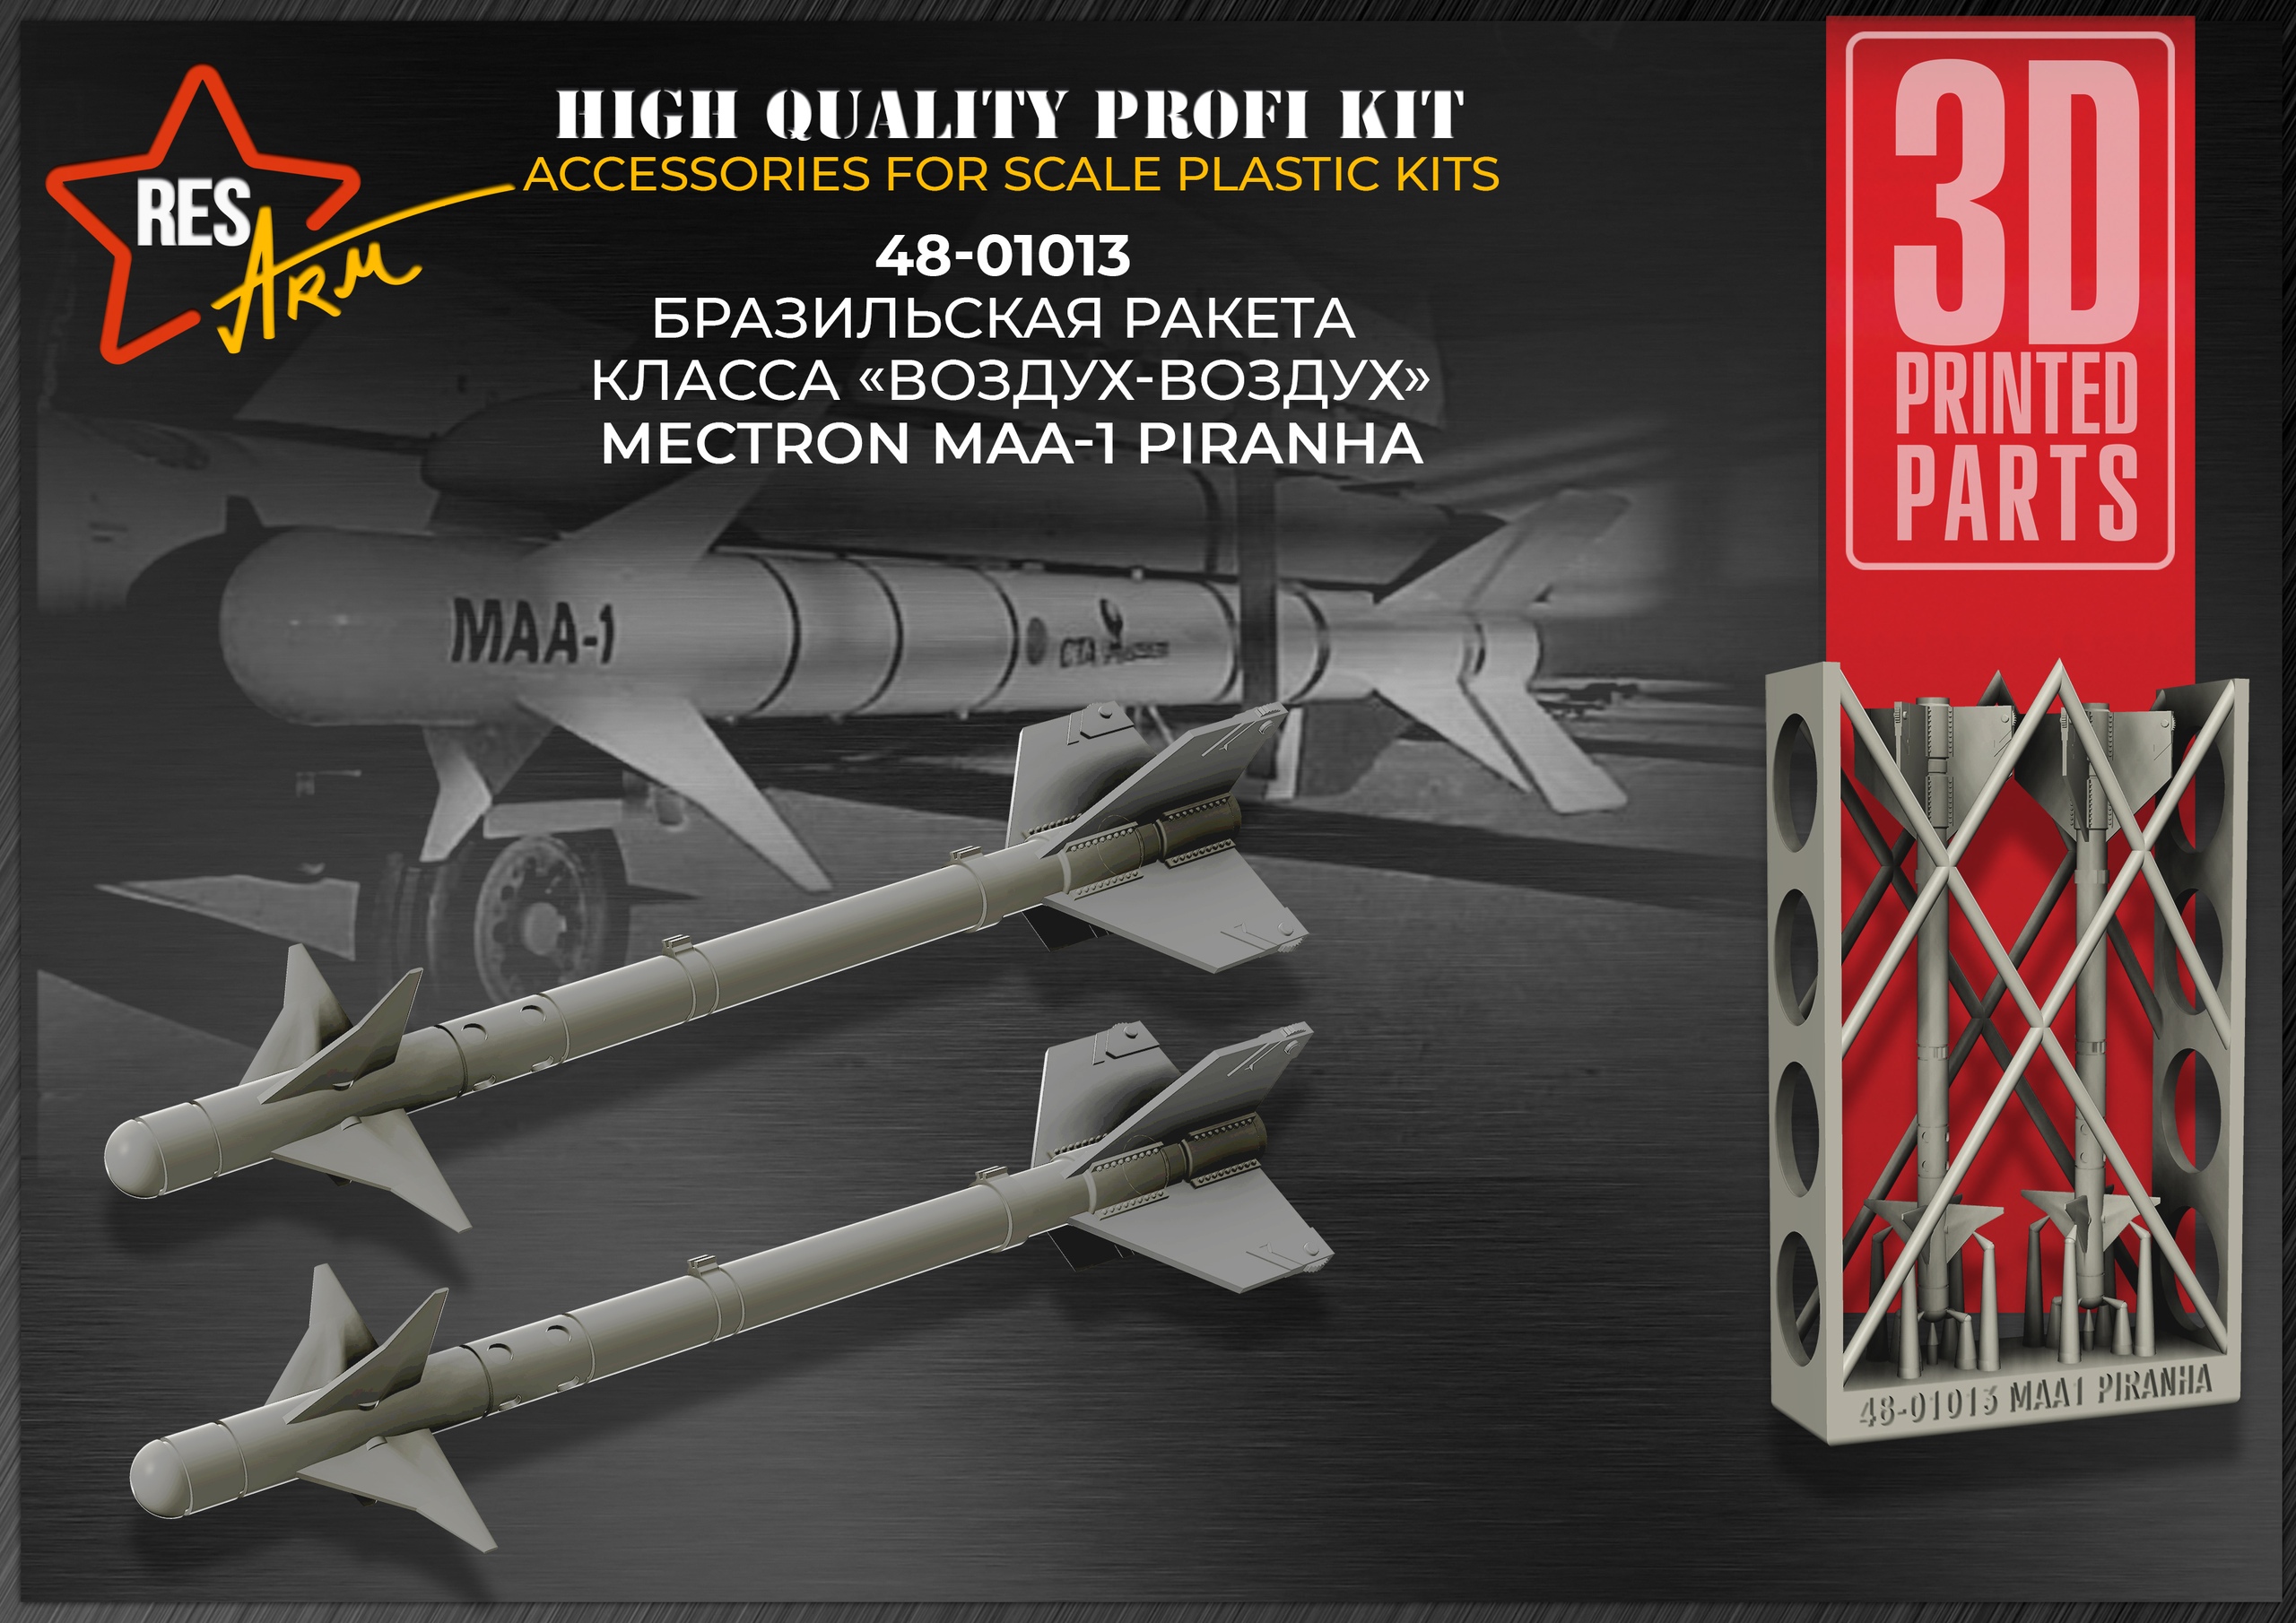 Дополнения из смолы 1/48 Бразильская ракета класса «воздух-воздух» Mectron MAA-1 Piranha (RESArm)